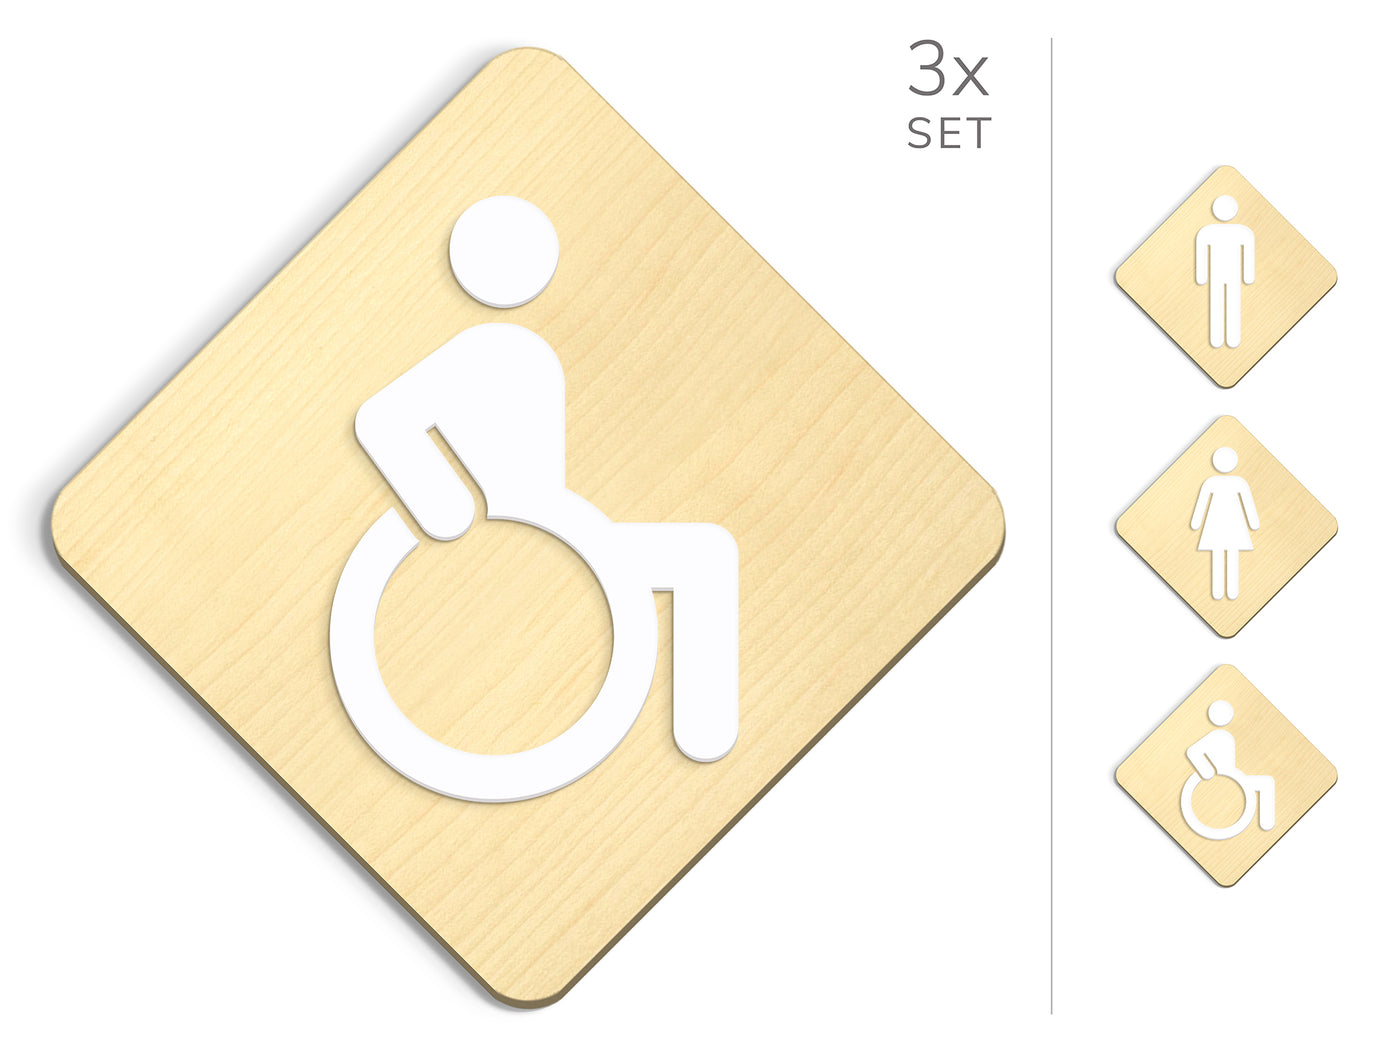 Classic, 3x Base Romboidale - Set targhe per bagno, segnaletica servizi igienici - Uomo, Donna, Disabili